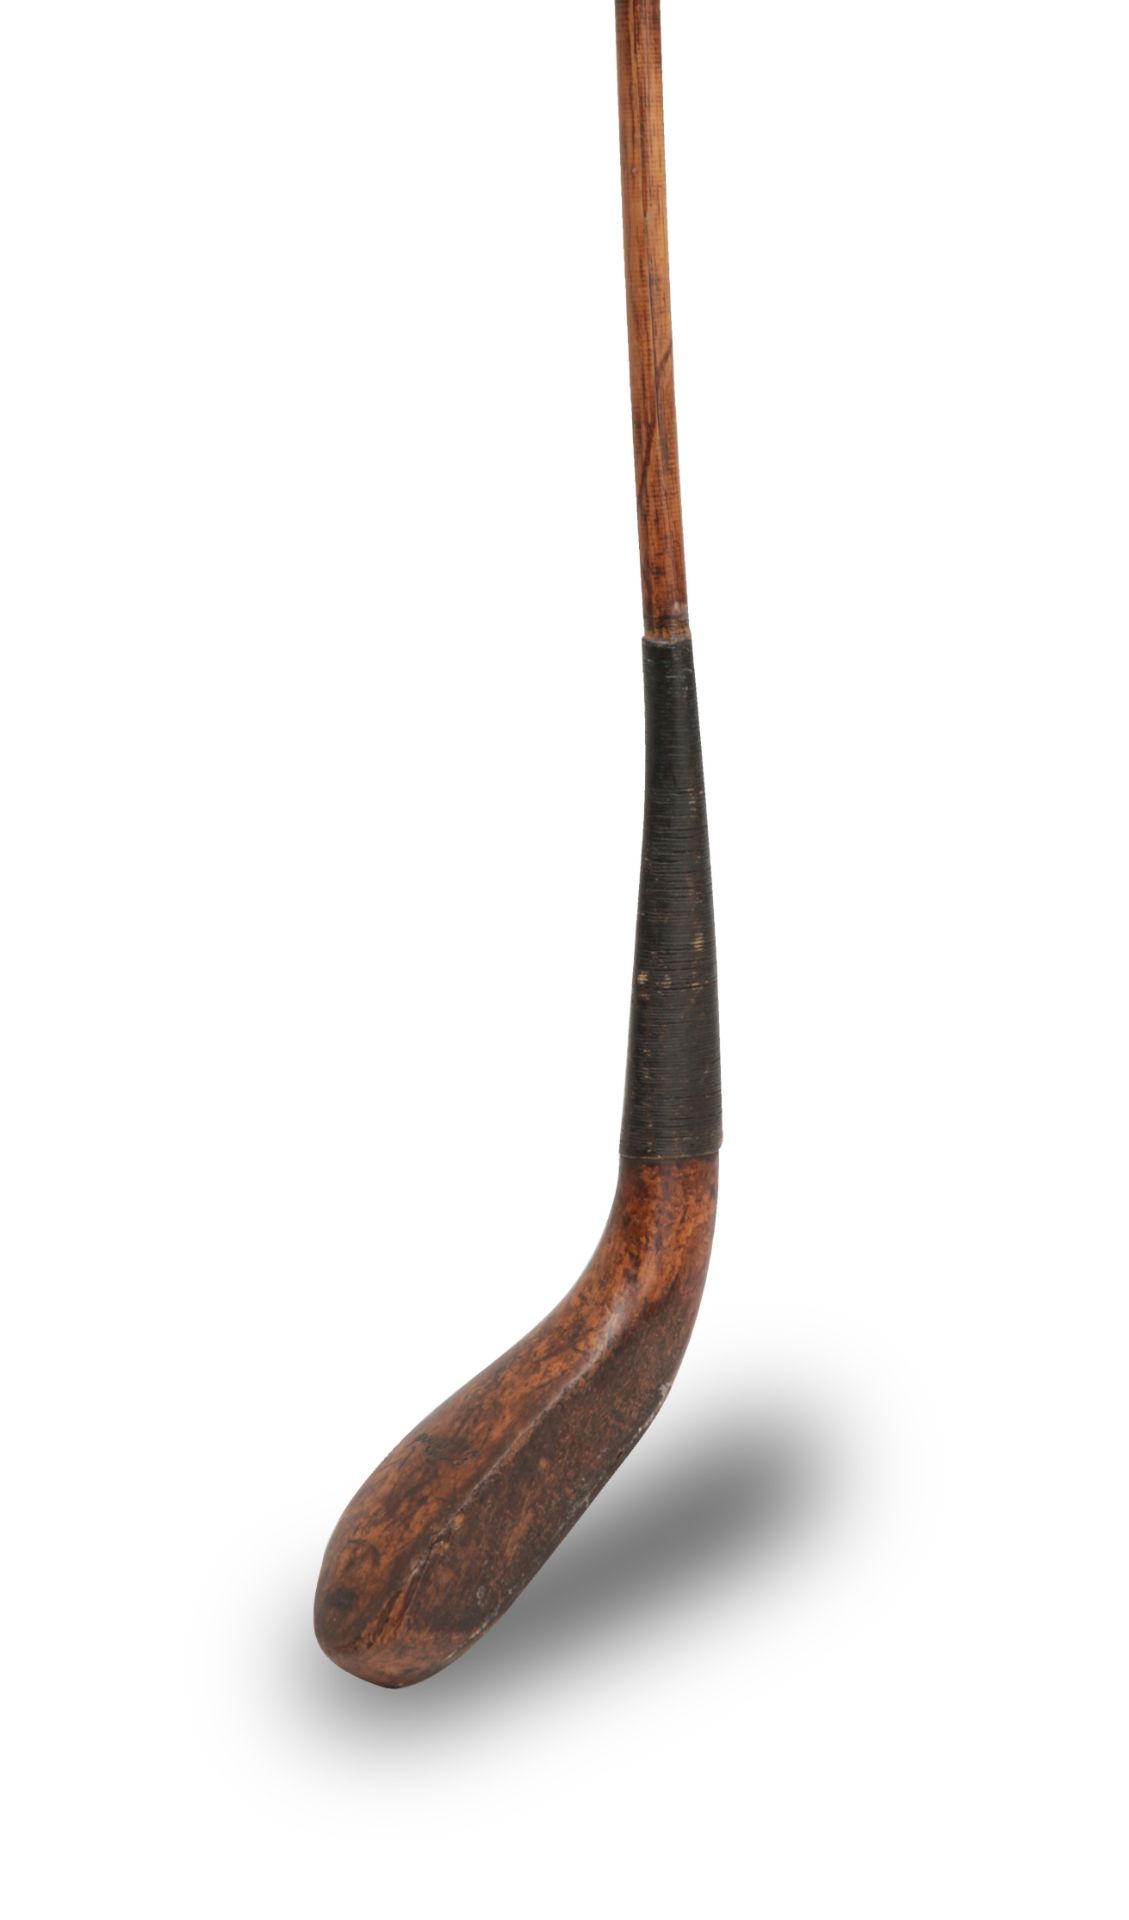 TOM HOOD: A LONG NOSE SPOON, CIRCA 1870